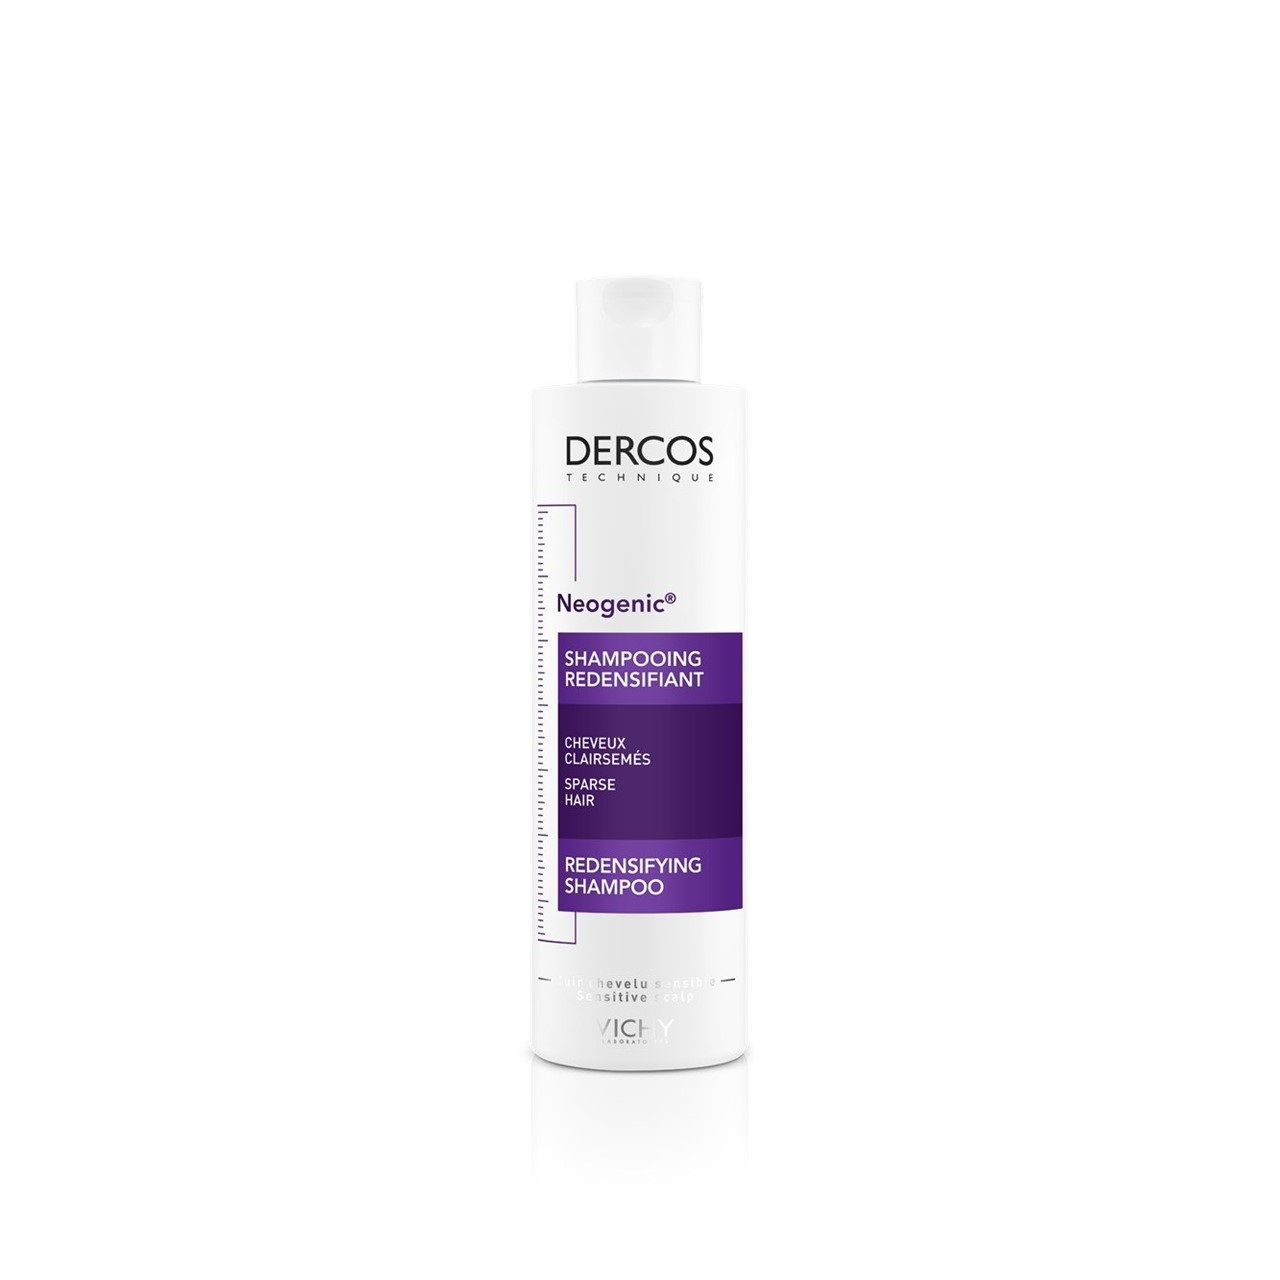 Vichy Dercos Neogenic Redensifying Shampoo 200ml (6.76fl oz)